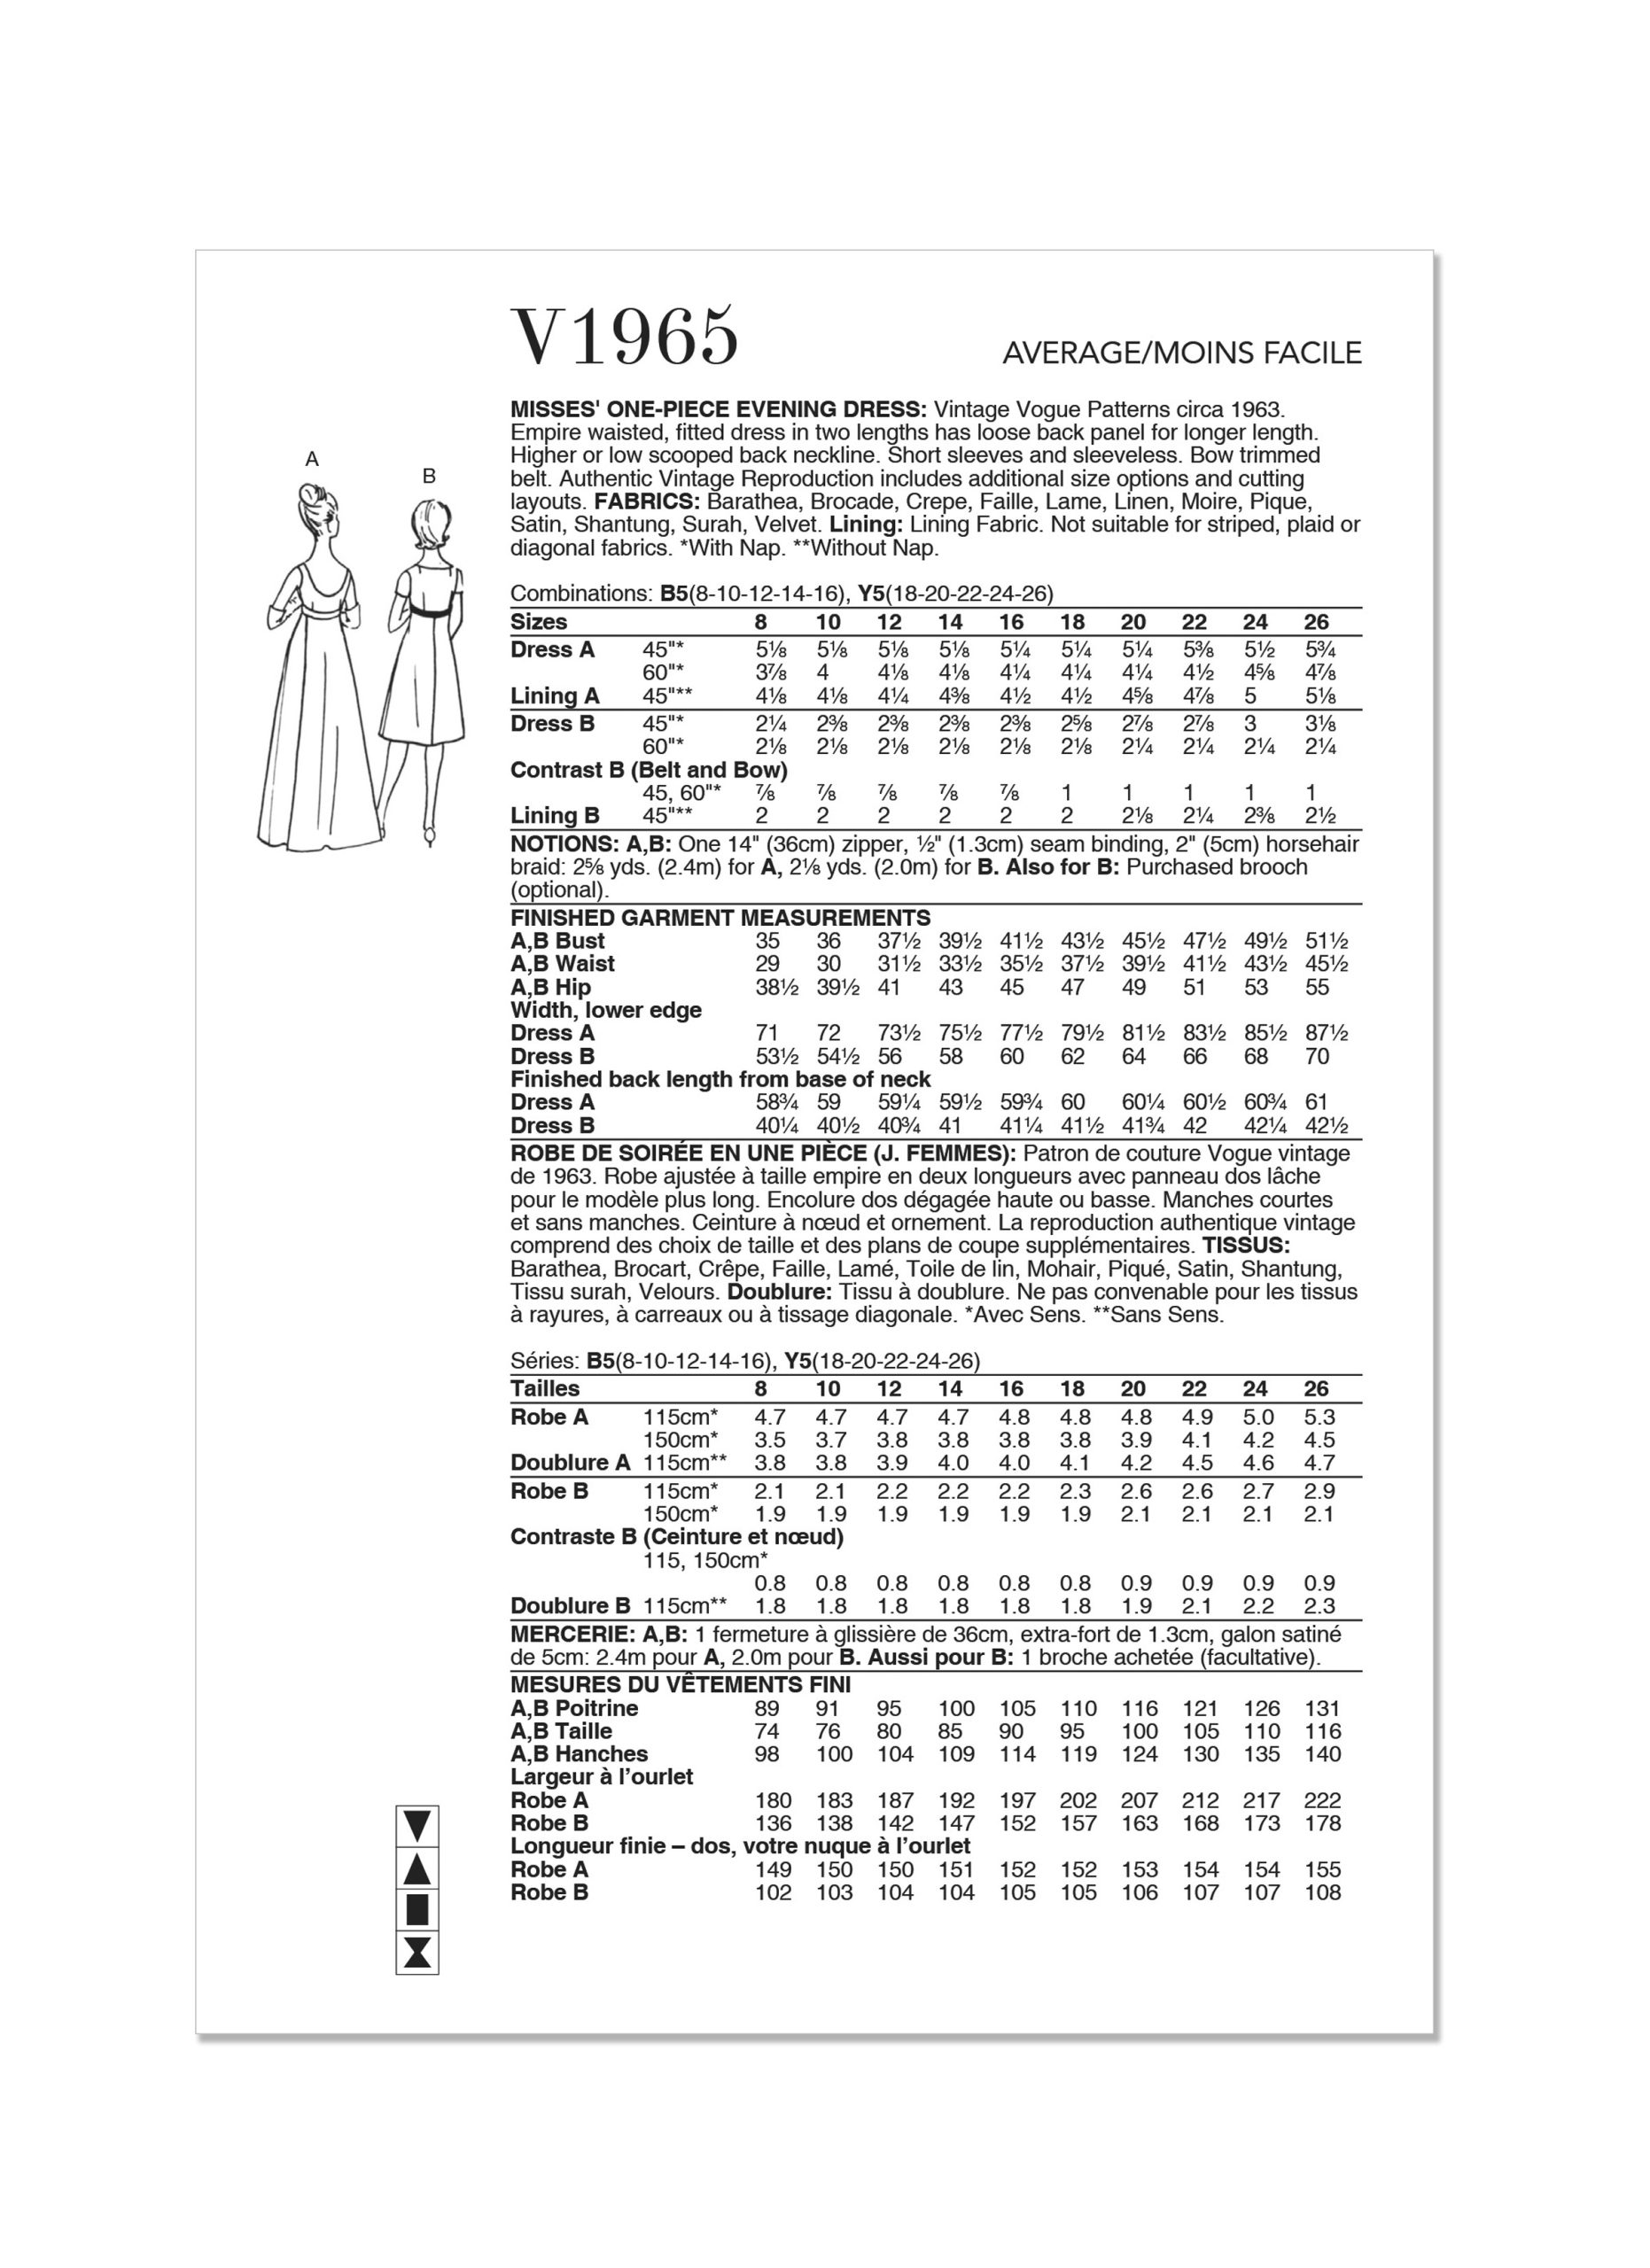 Vogue Vintage Evening Dress V1965 - The Fold Line